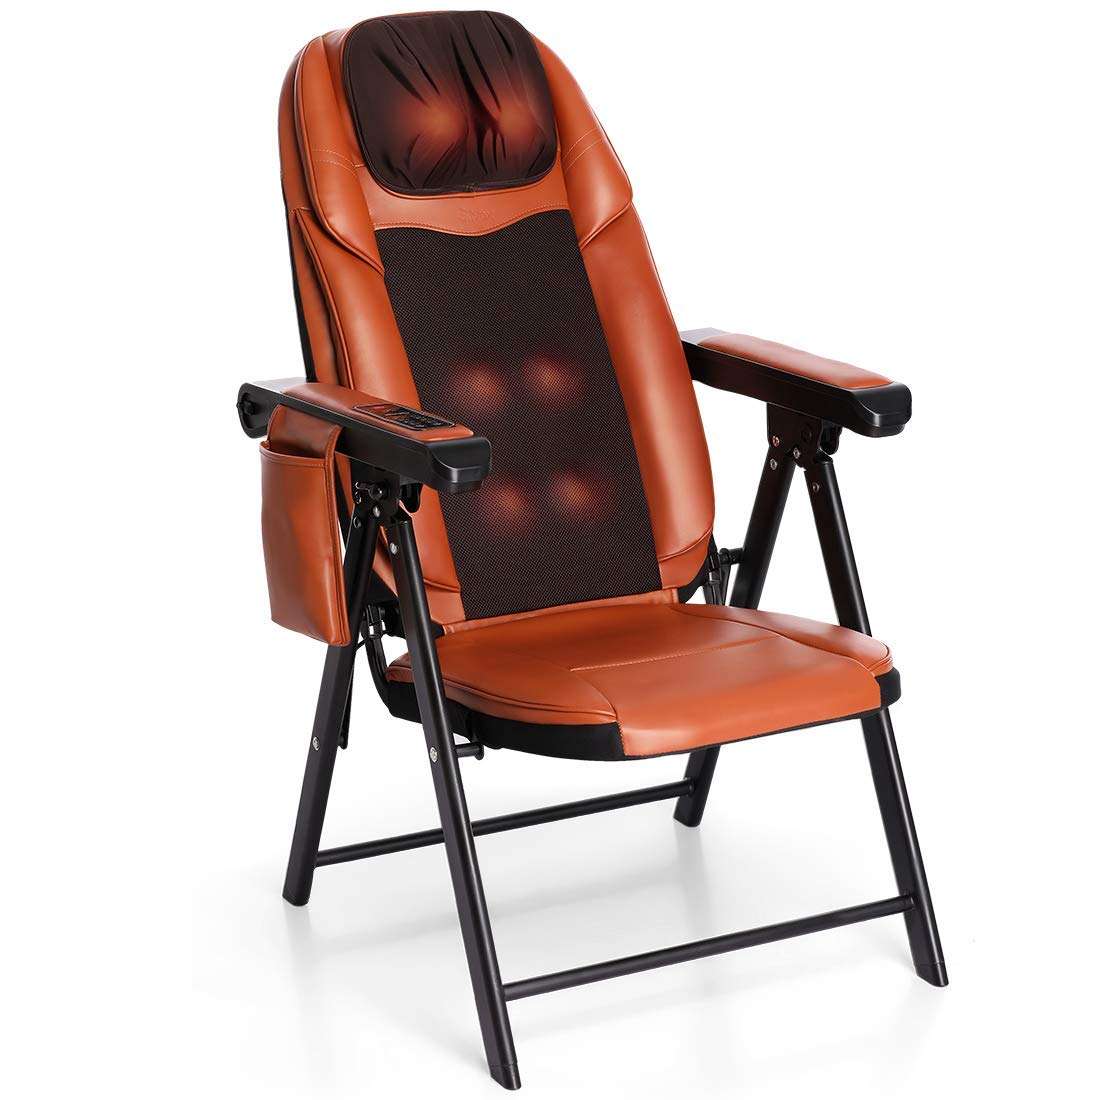 Folding Shiatsu Massage Chair with Heat